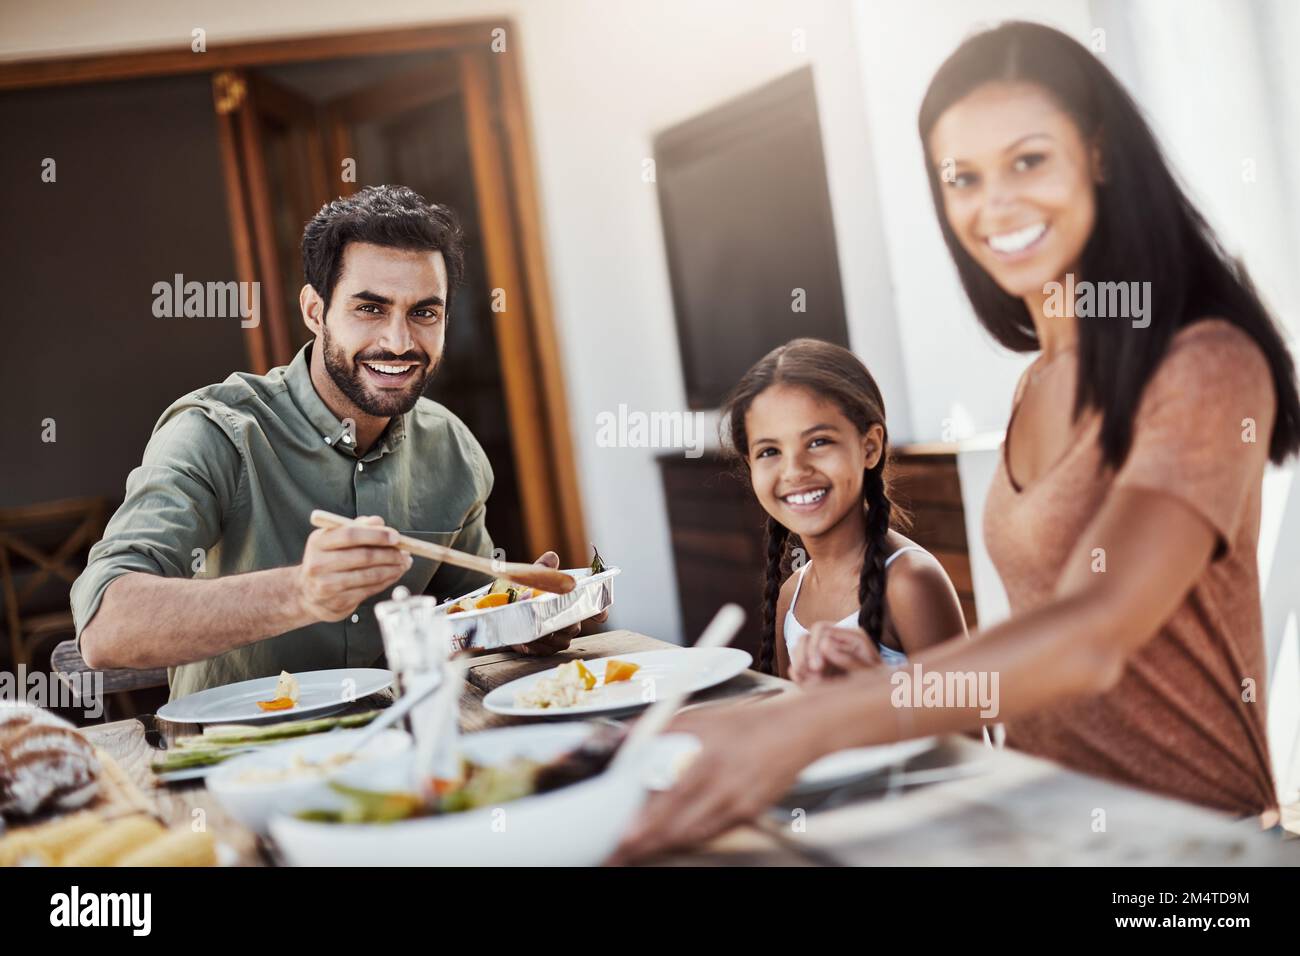 Essenszeit ist Familienzeit. Eine glückliche junge Familie, die gemeinsam im Freien speist. Stockfoto